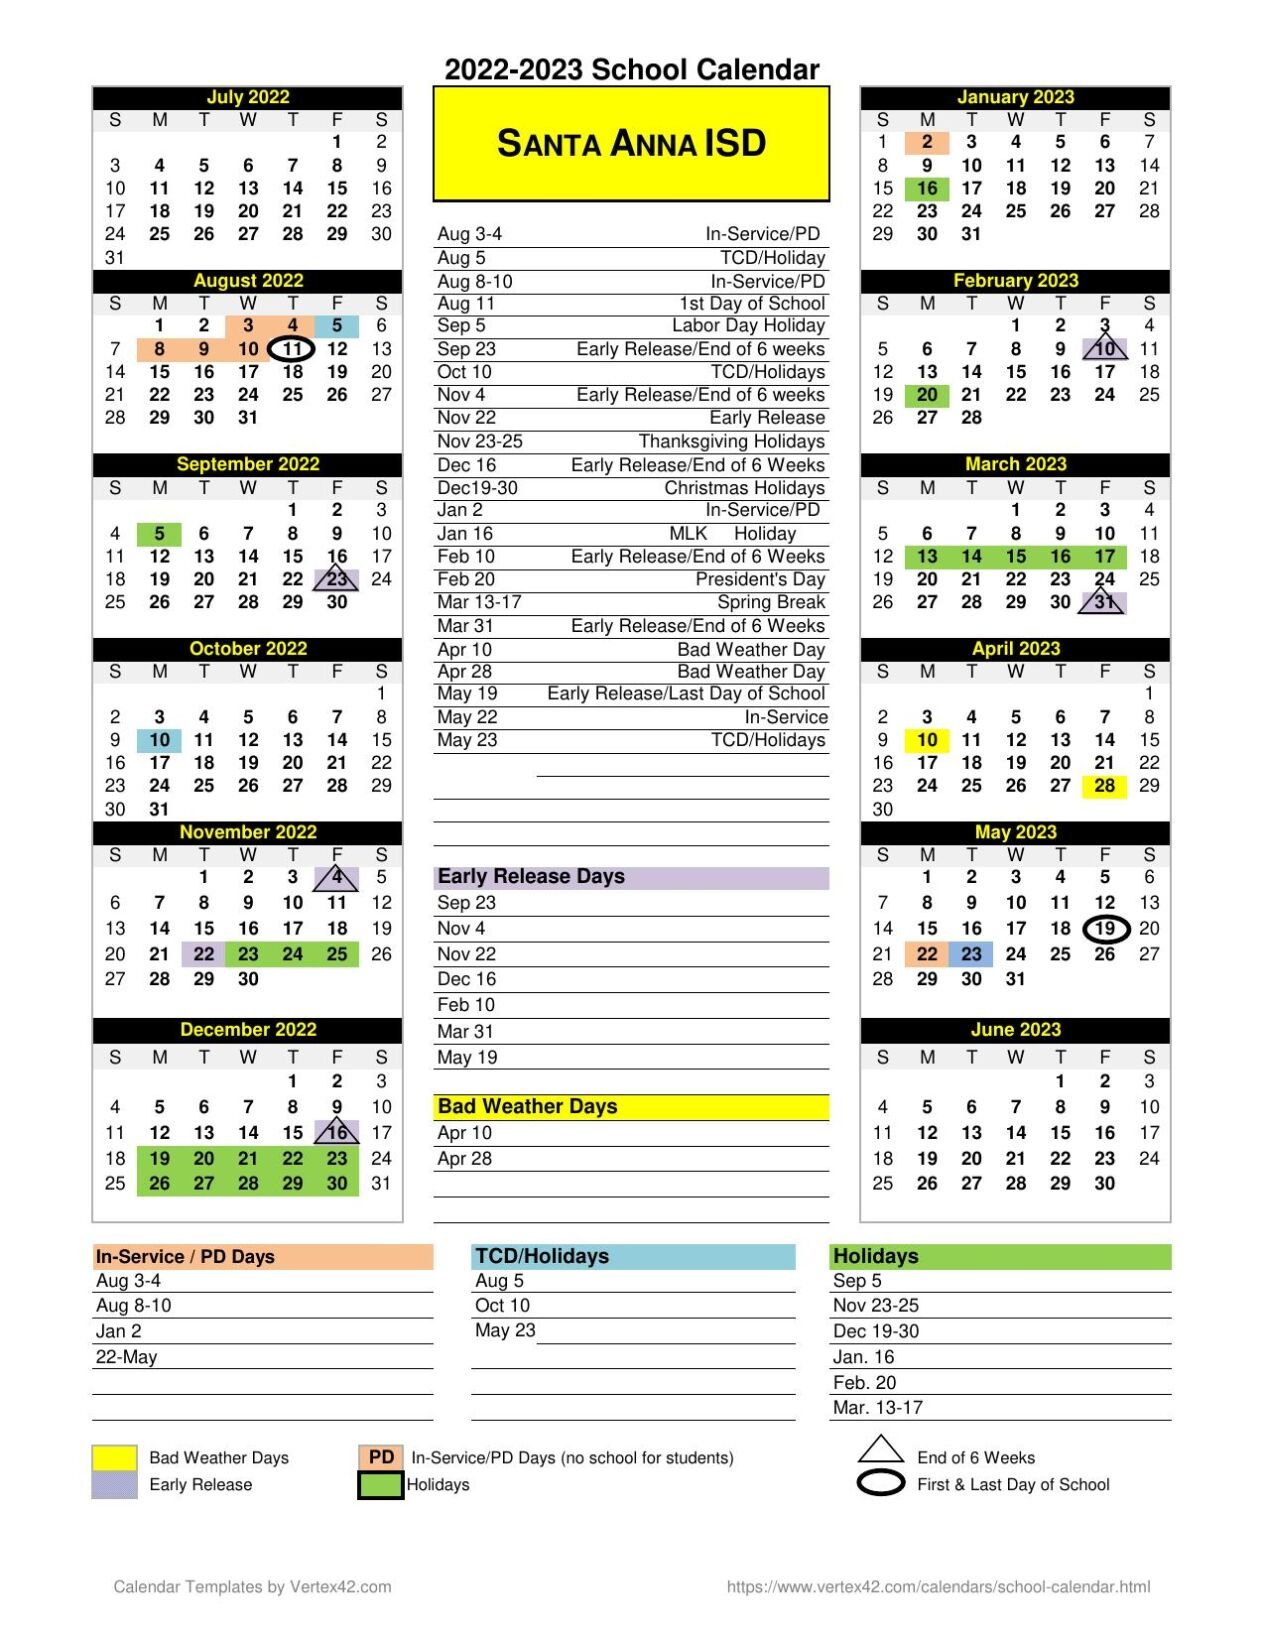 2022 2023 Santa Anna ISD Calendar colemantoday com